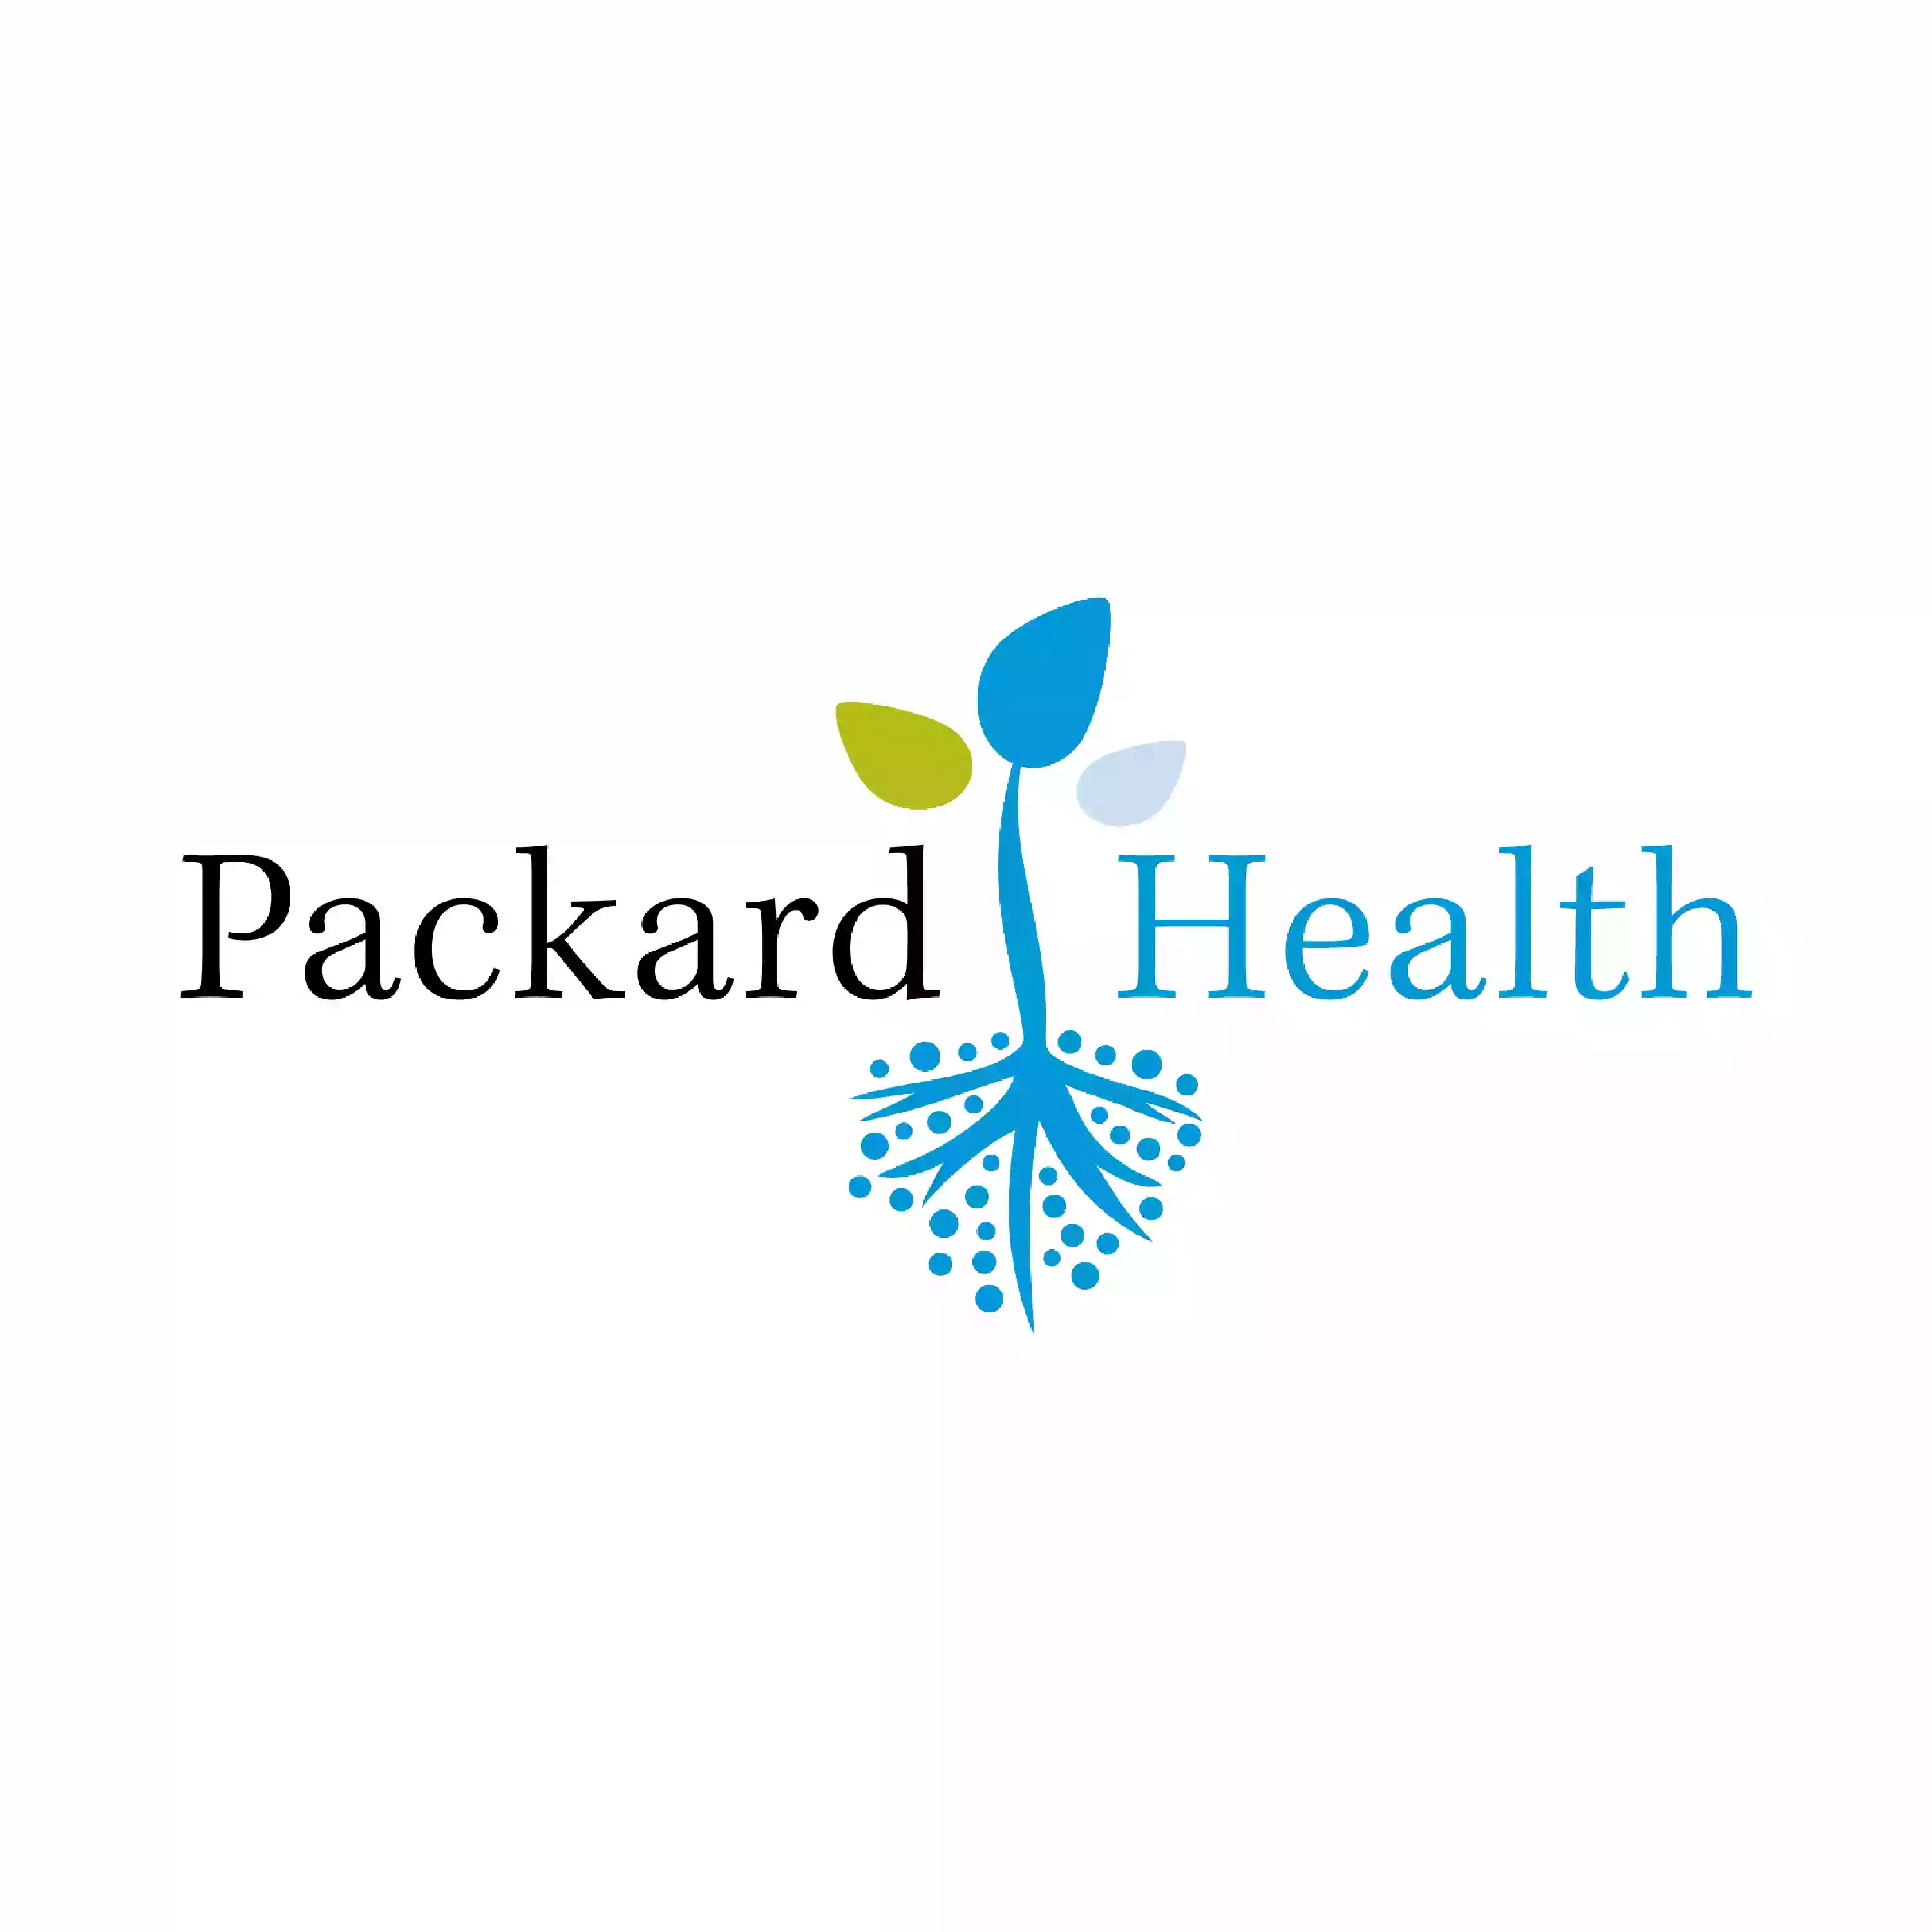 Packard Health East Suite 110